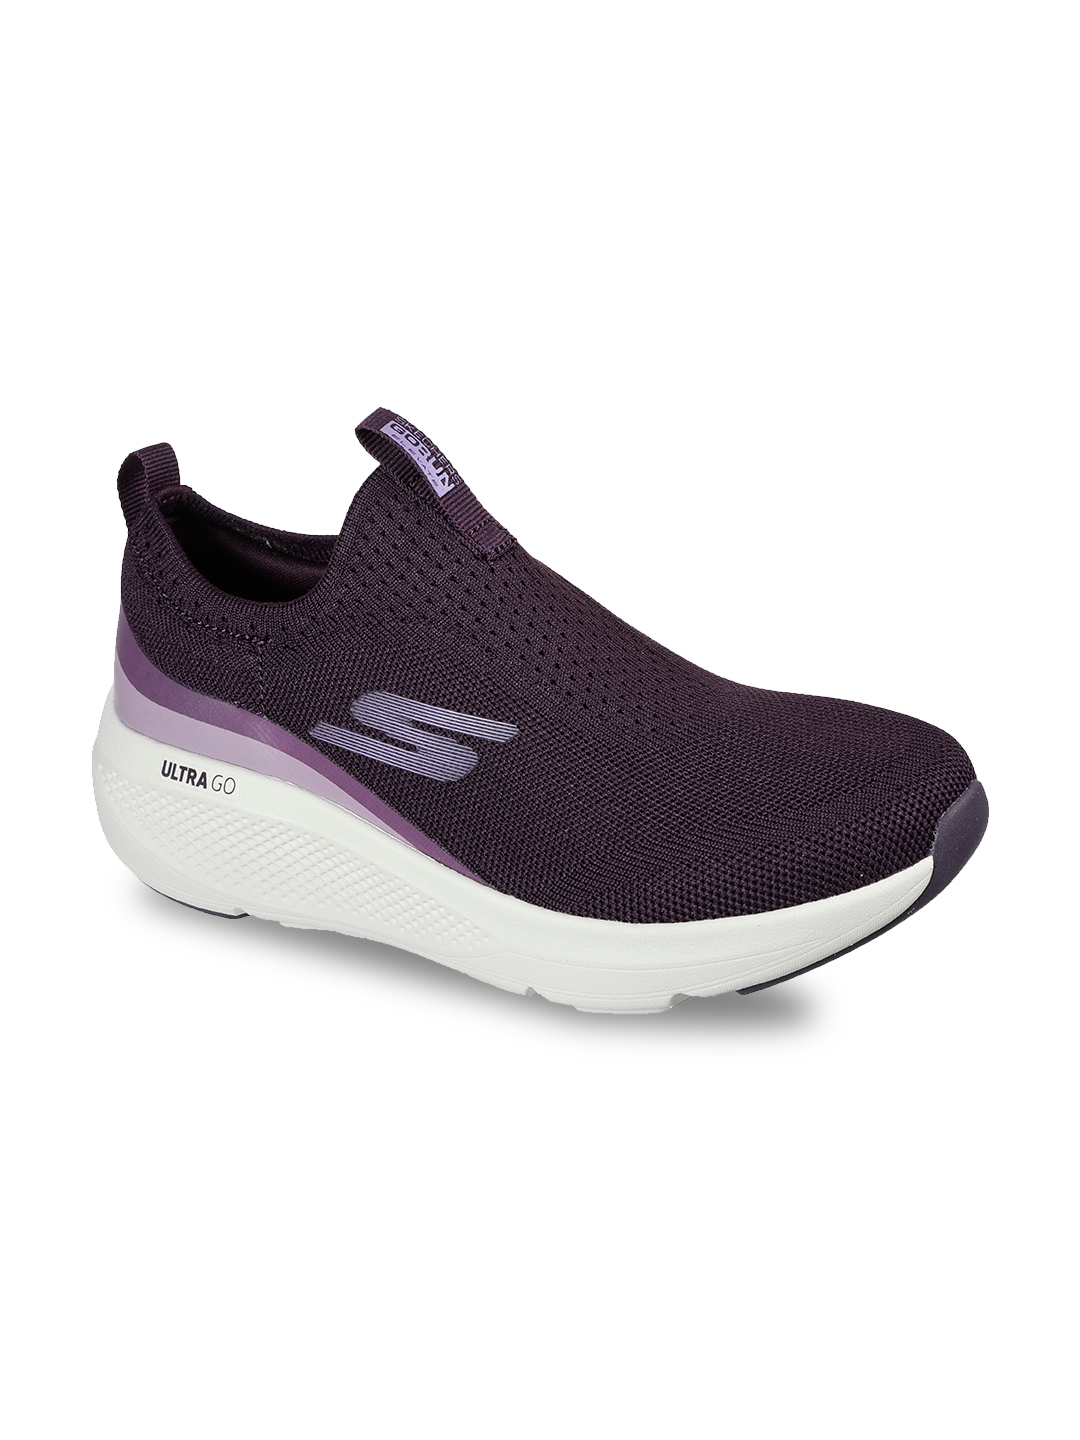 Buy Skechers Women Purple Sports Shoes - Sports Shoes for Women ...